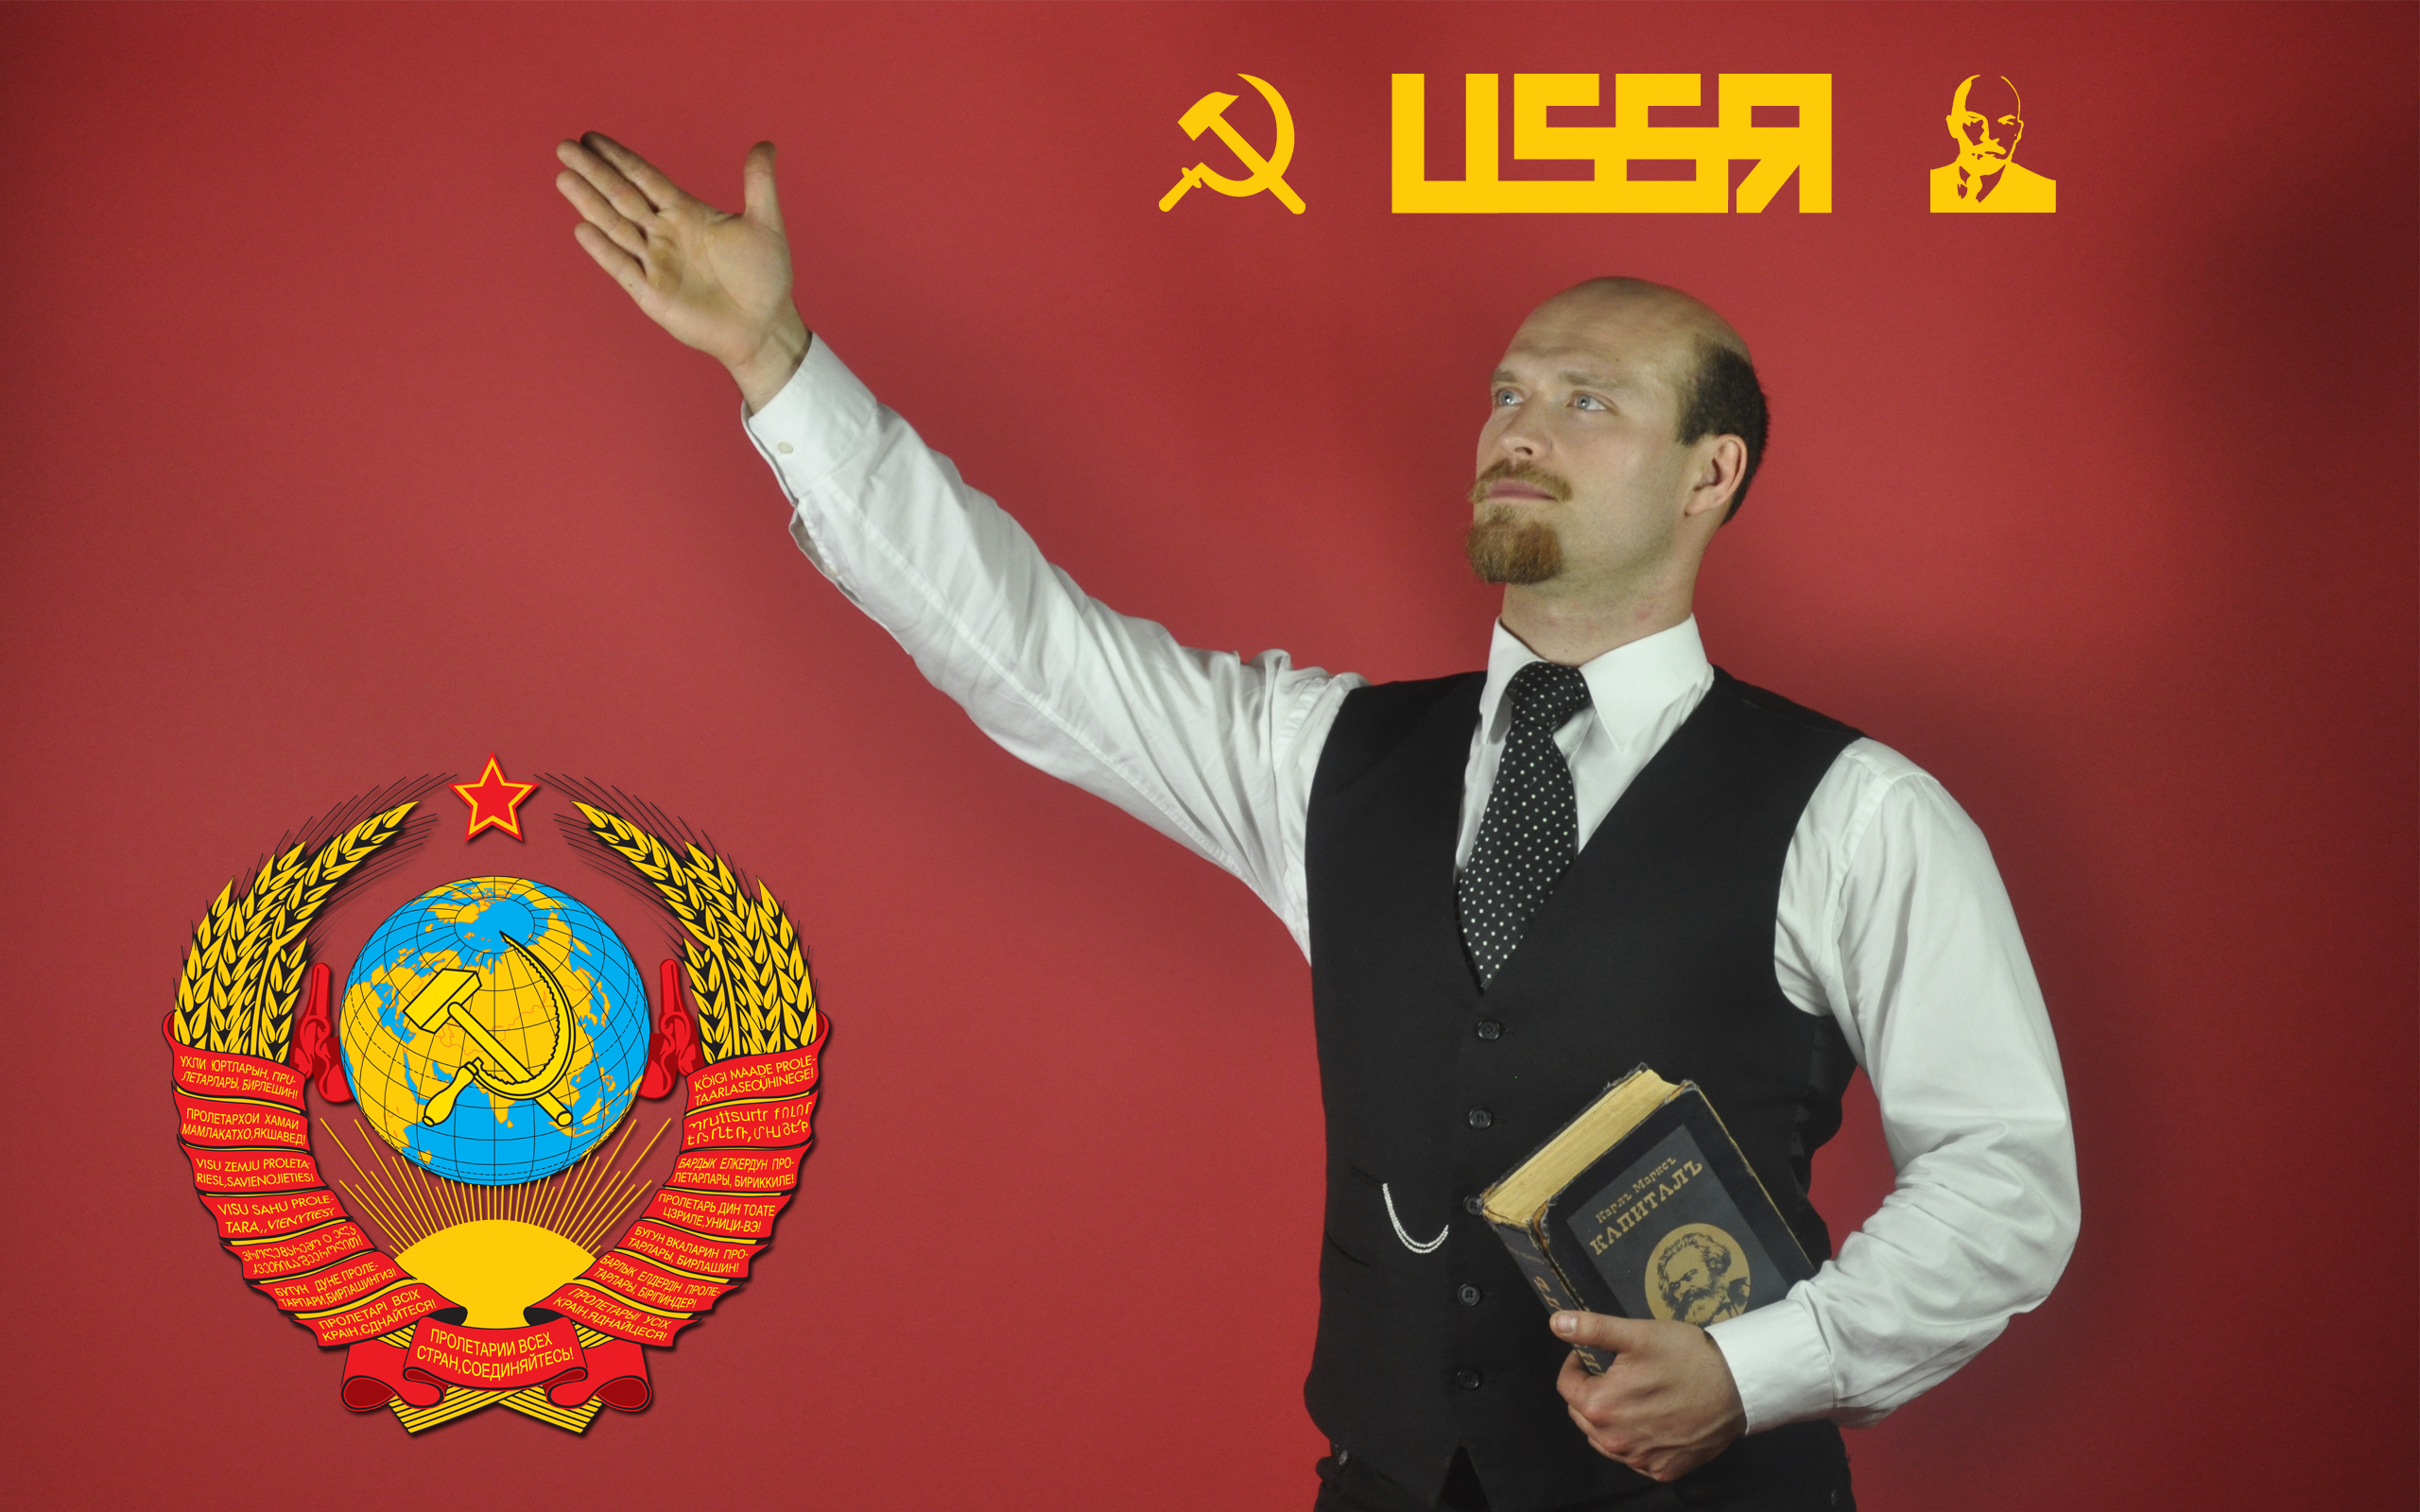 косплей, люди, Ленина, СССР - обои на рабочий стол